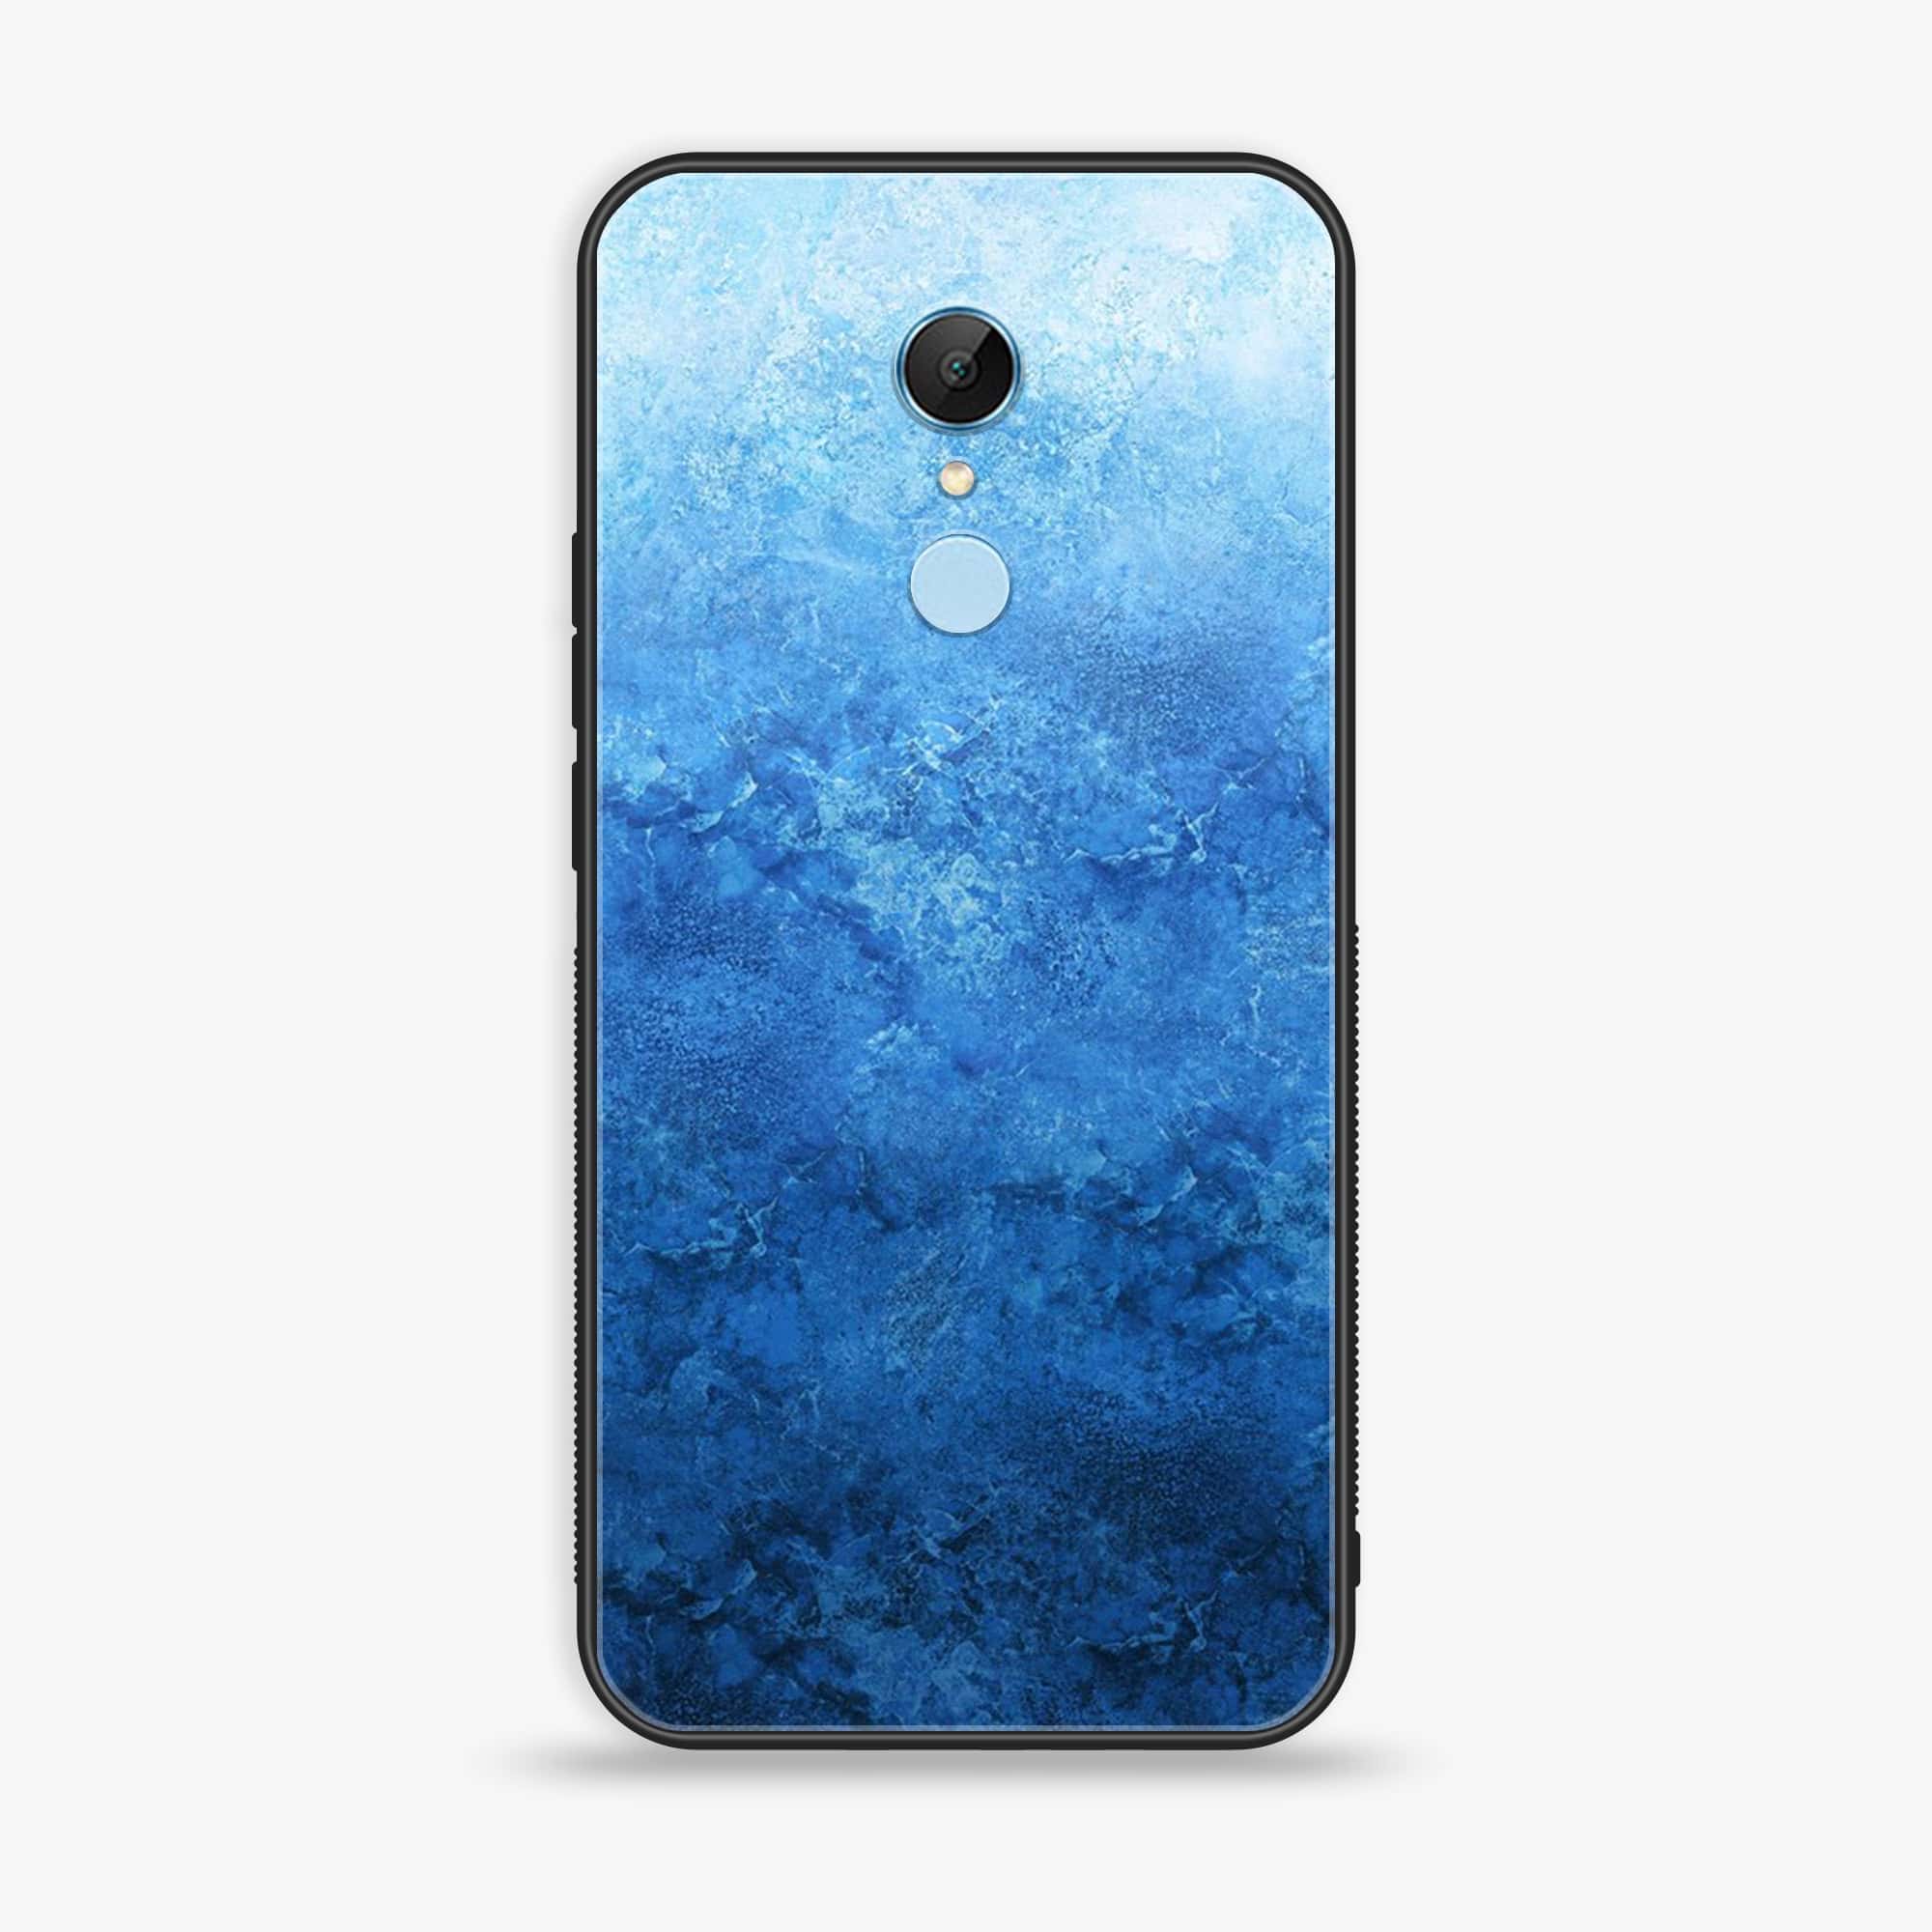 Xiaomi Redmi 5 - Blue Marble Series - Premium Printed Glass soft Bumper shock Proof Case